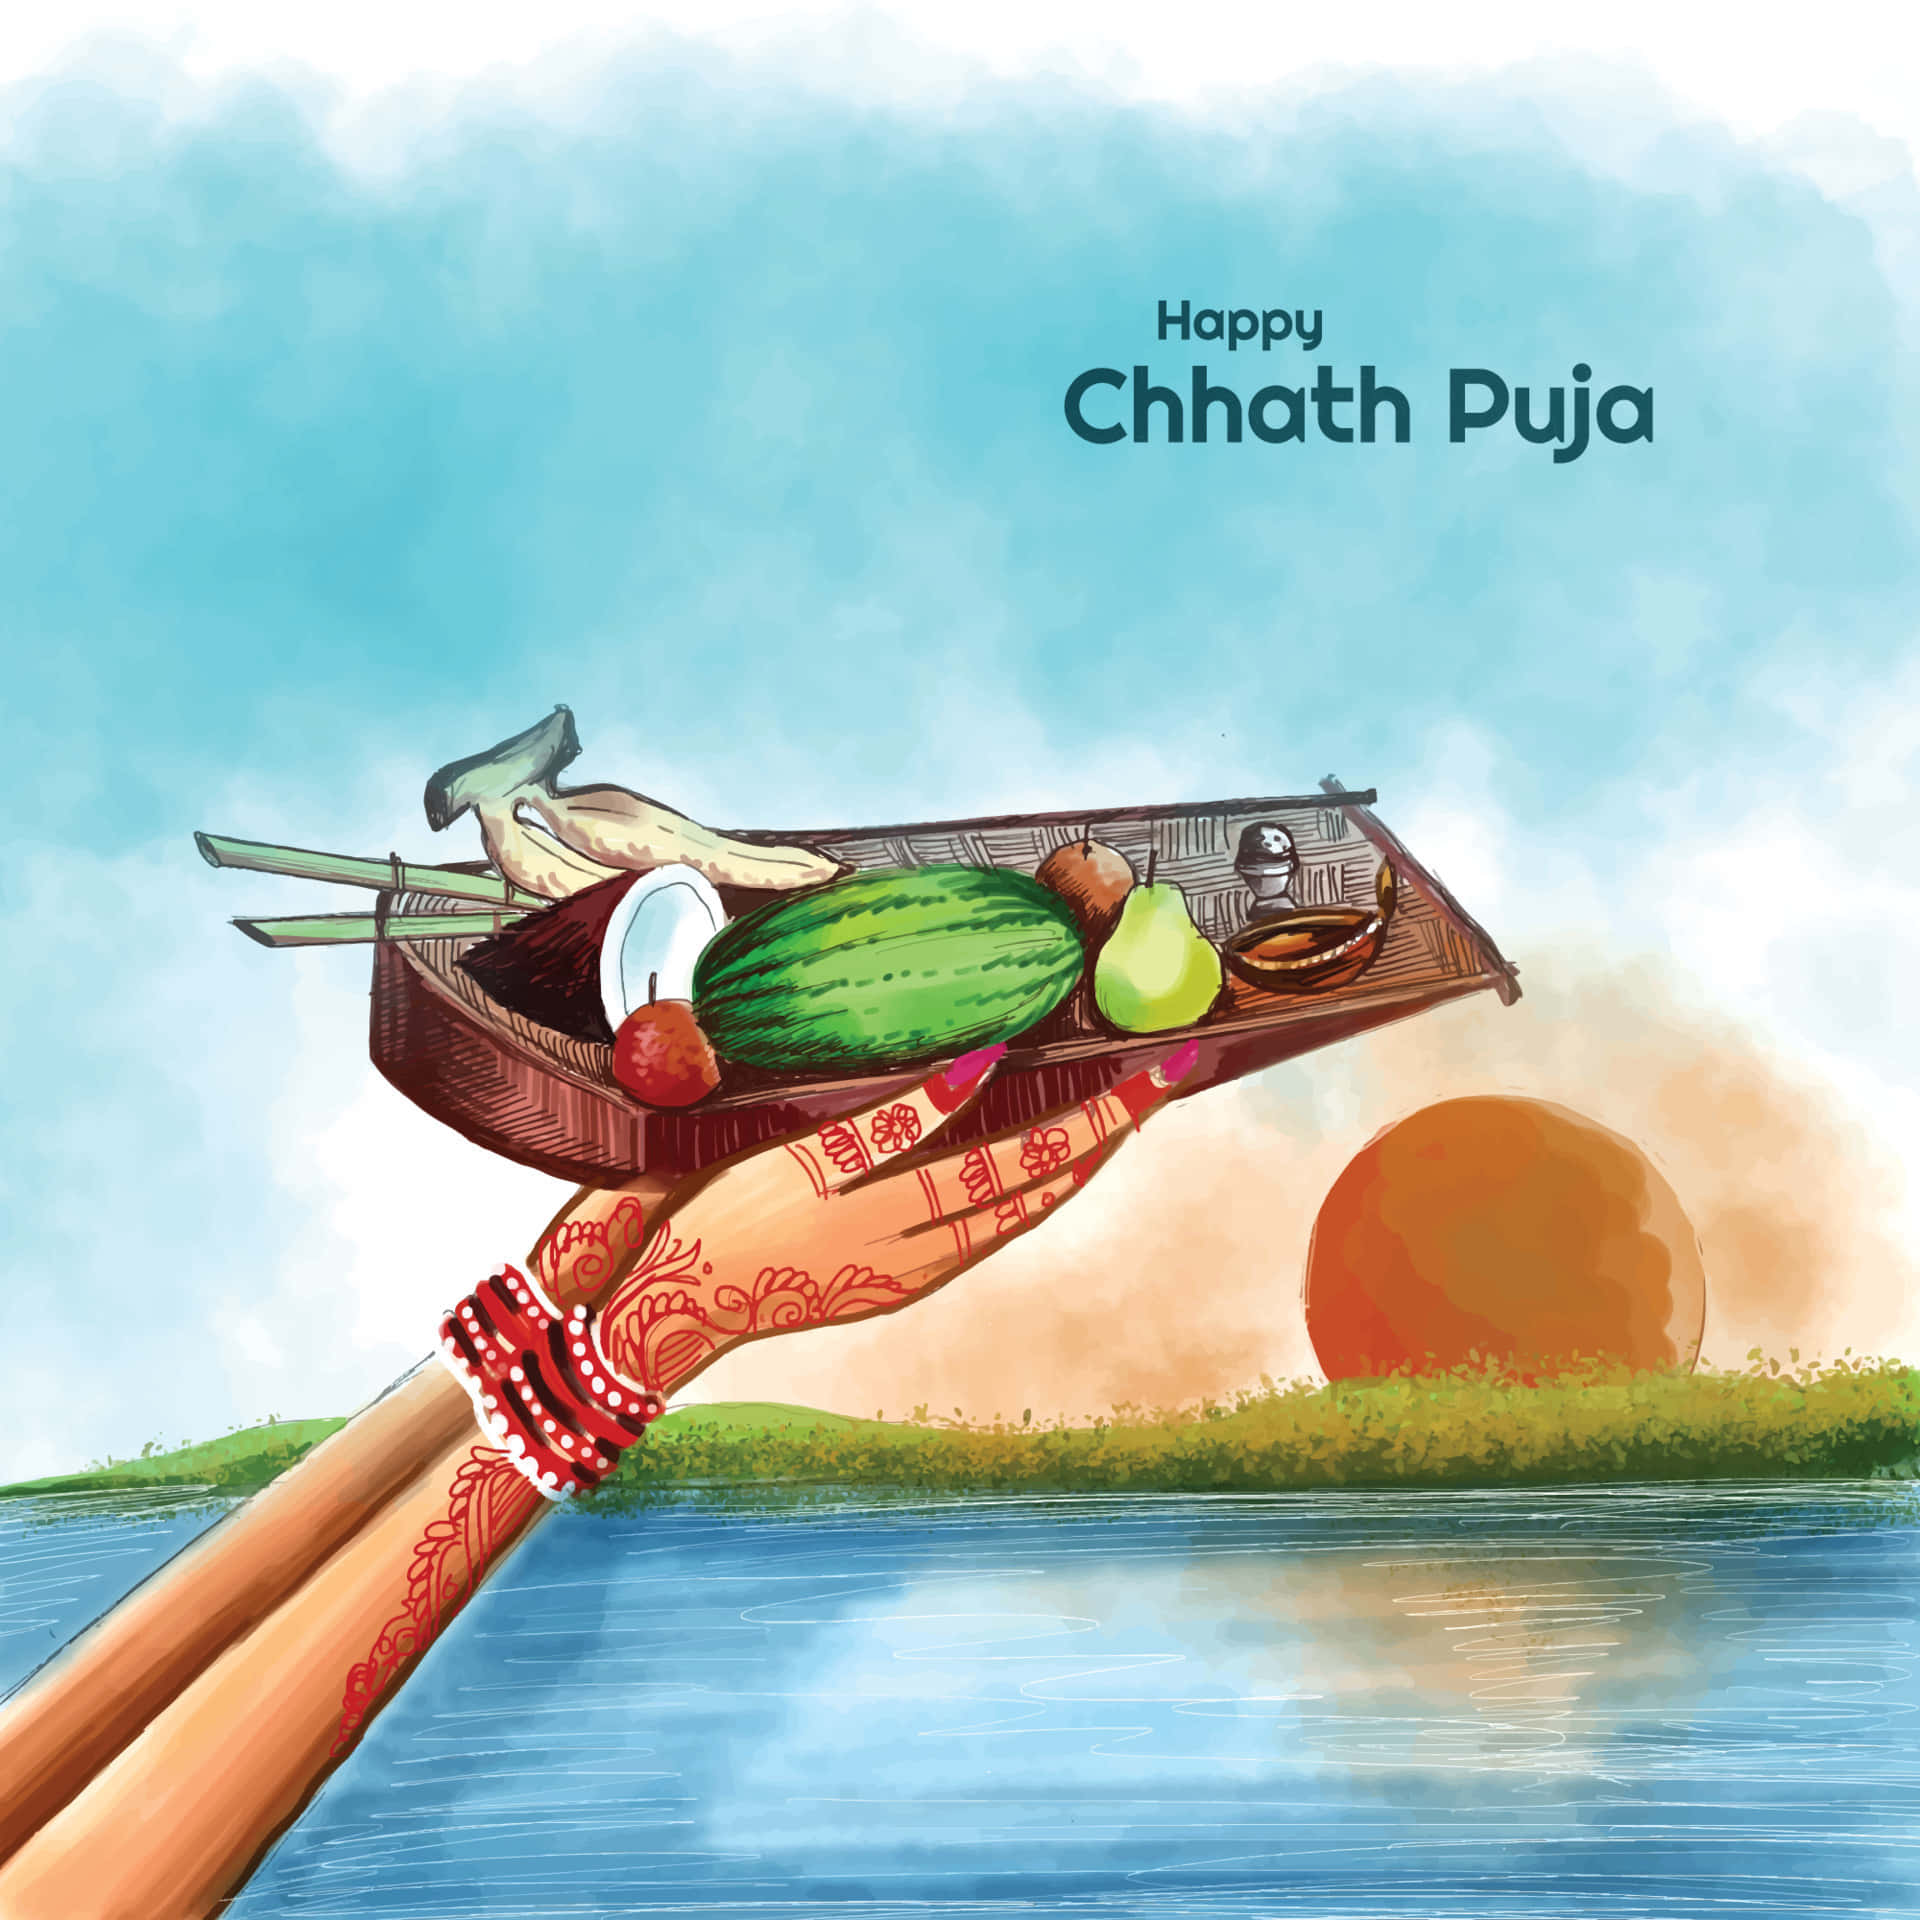 Chhath Puja 2022: छठ पूजा का तीसरा दिन आज, जानिए आपके शहर में कब होगा  सूर्यास्त? - chhath puja 2022 know the sunset timings in your city